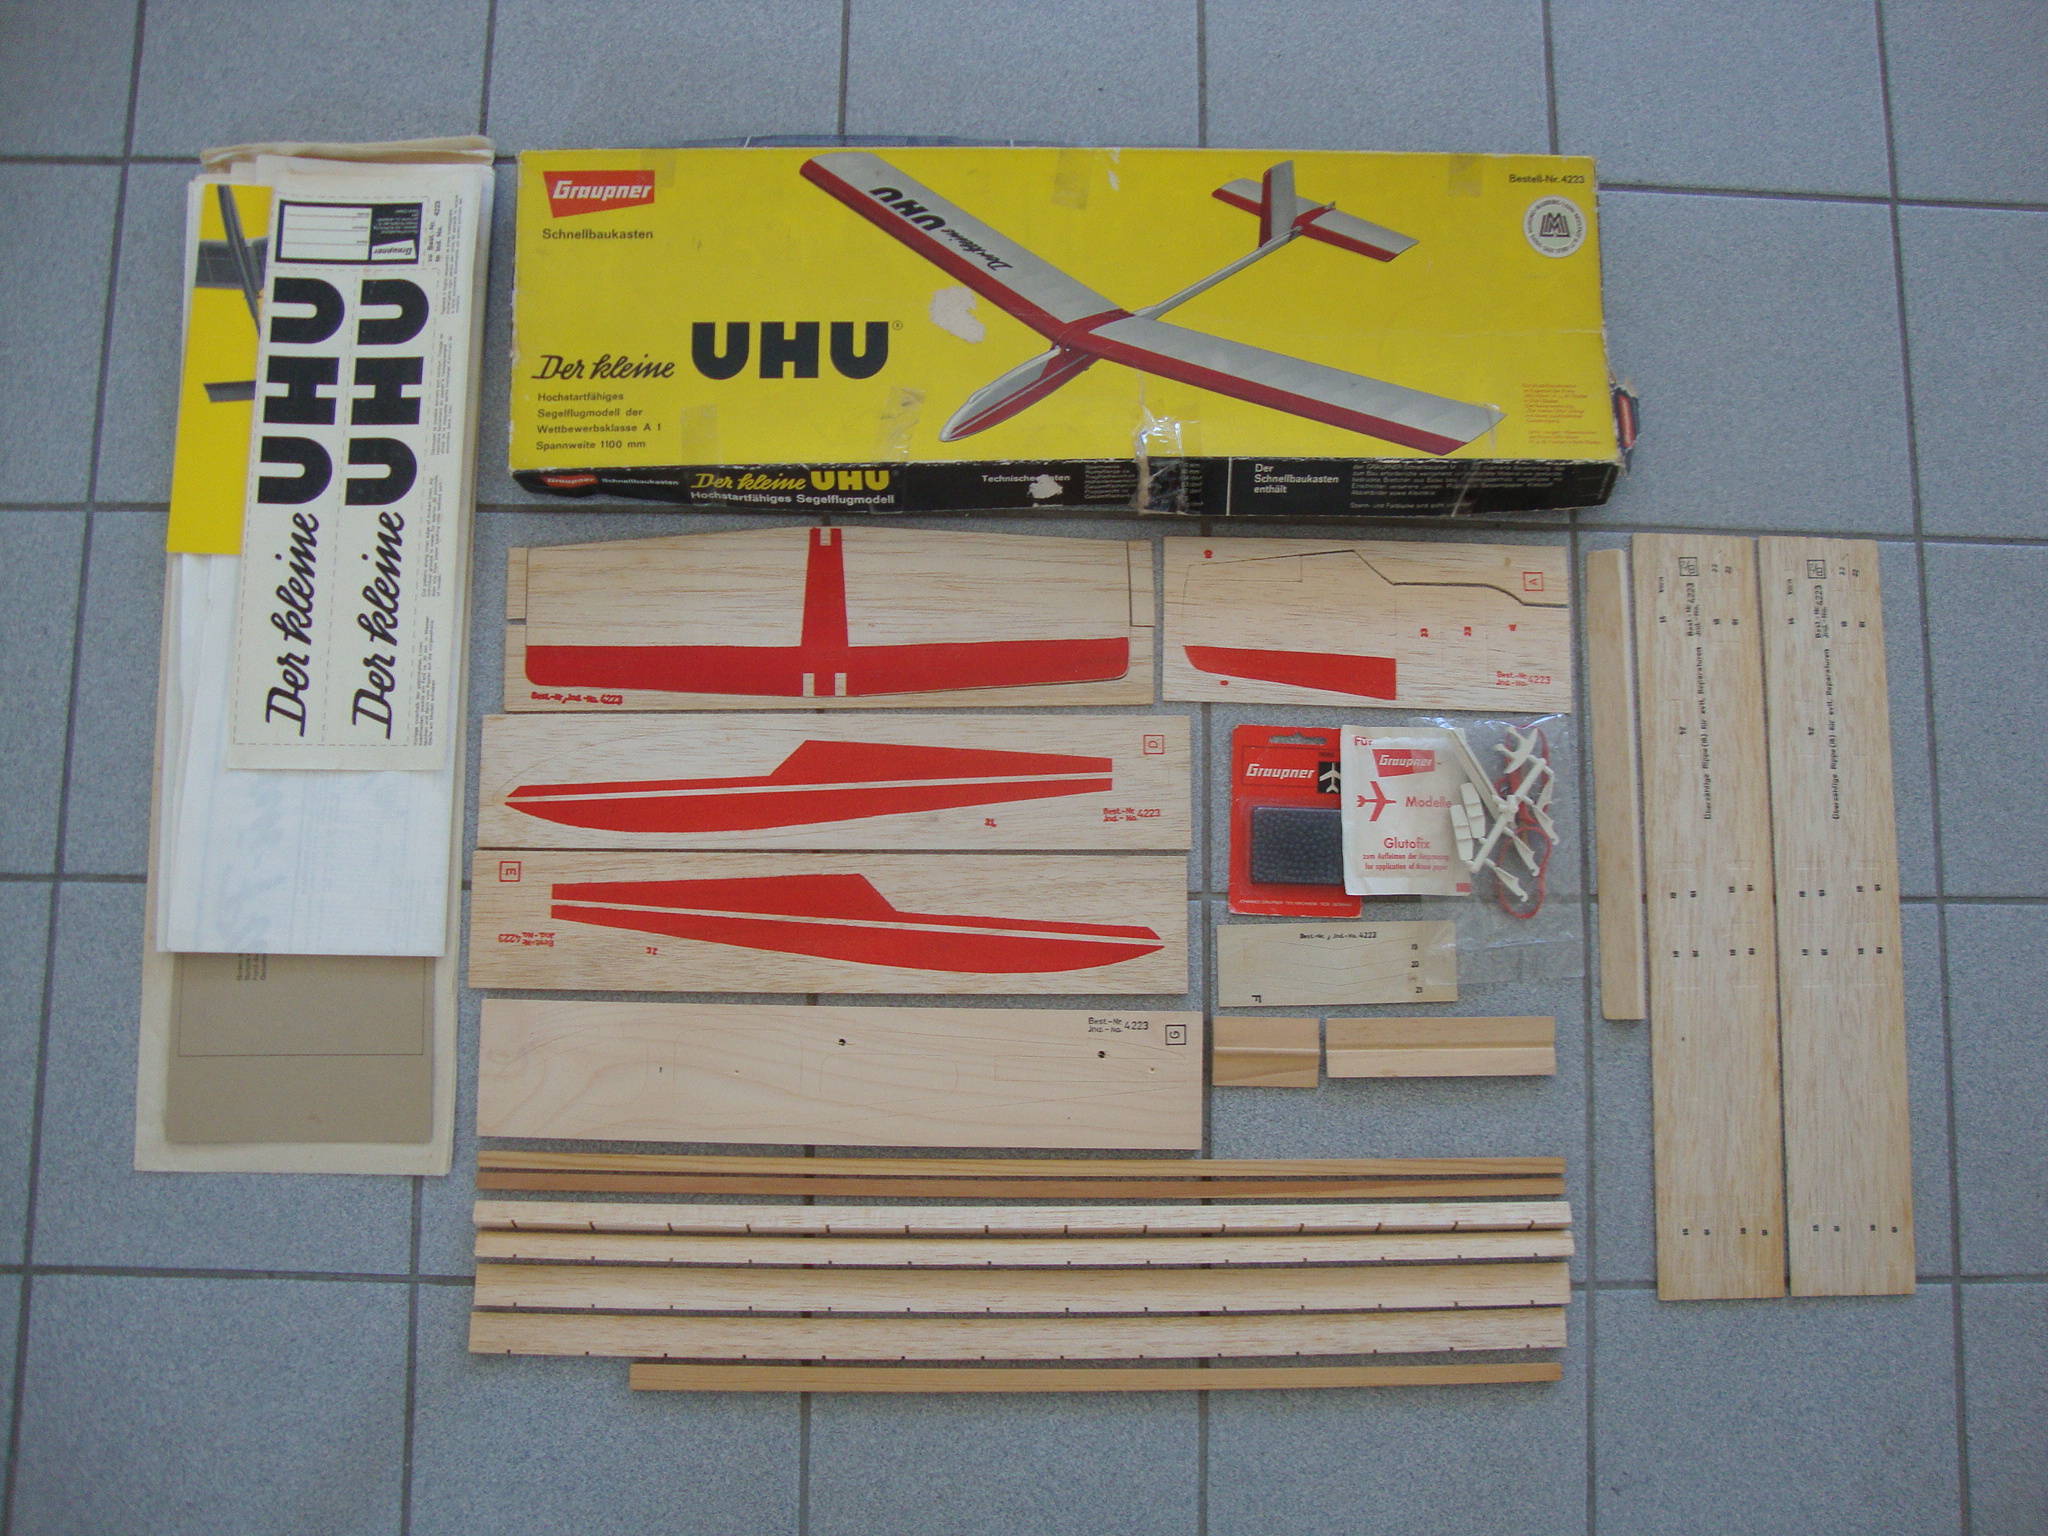 Das Foto zeigt den Kleinen UHU in seinen Einzelteilen als Baukasten.